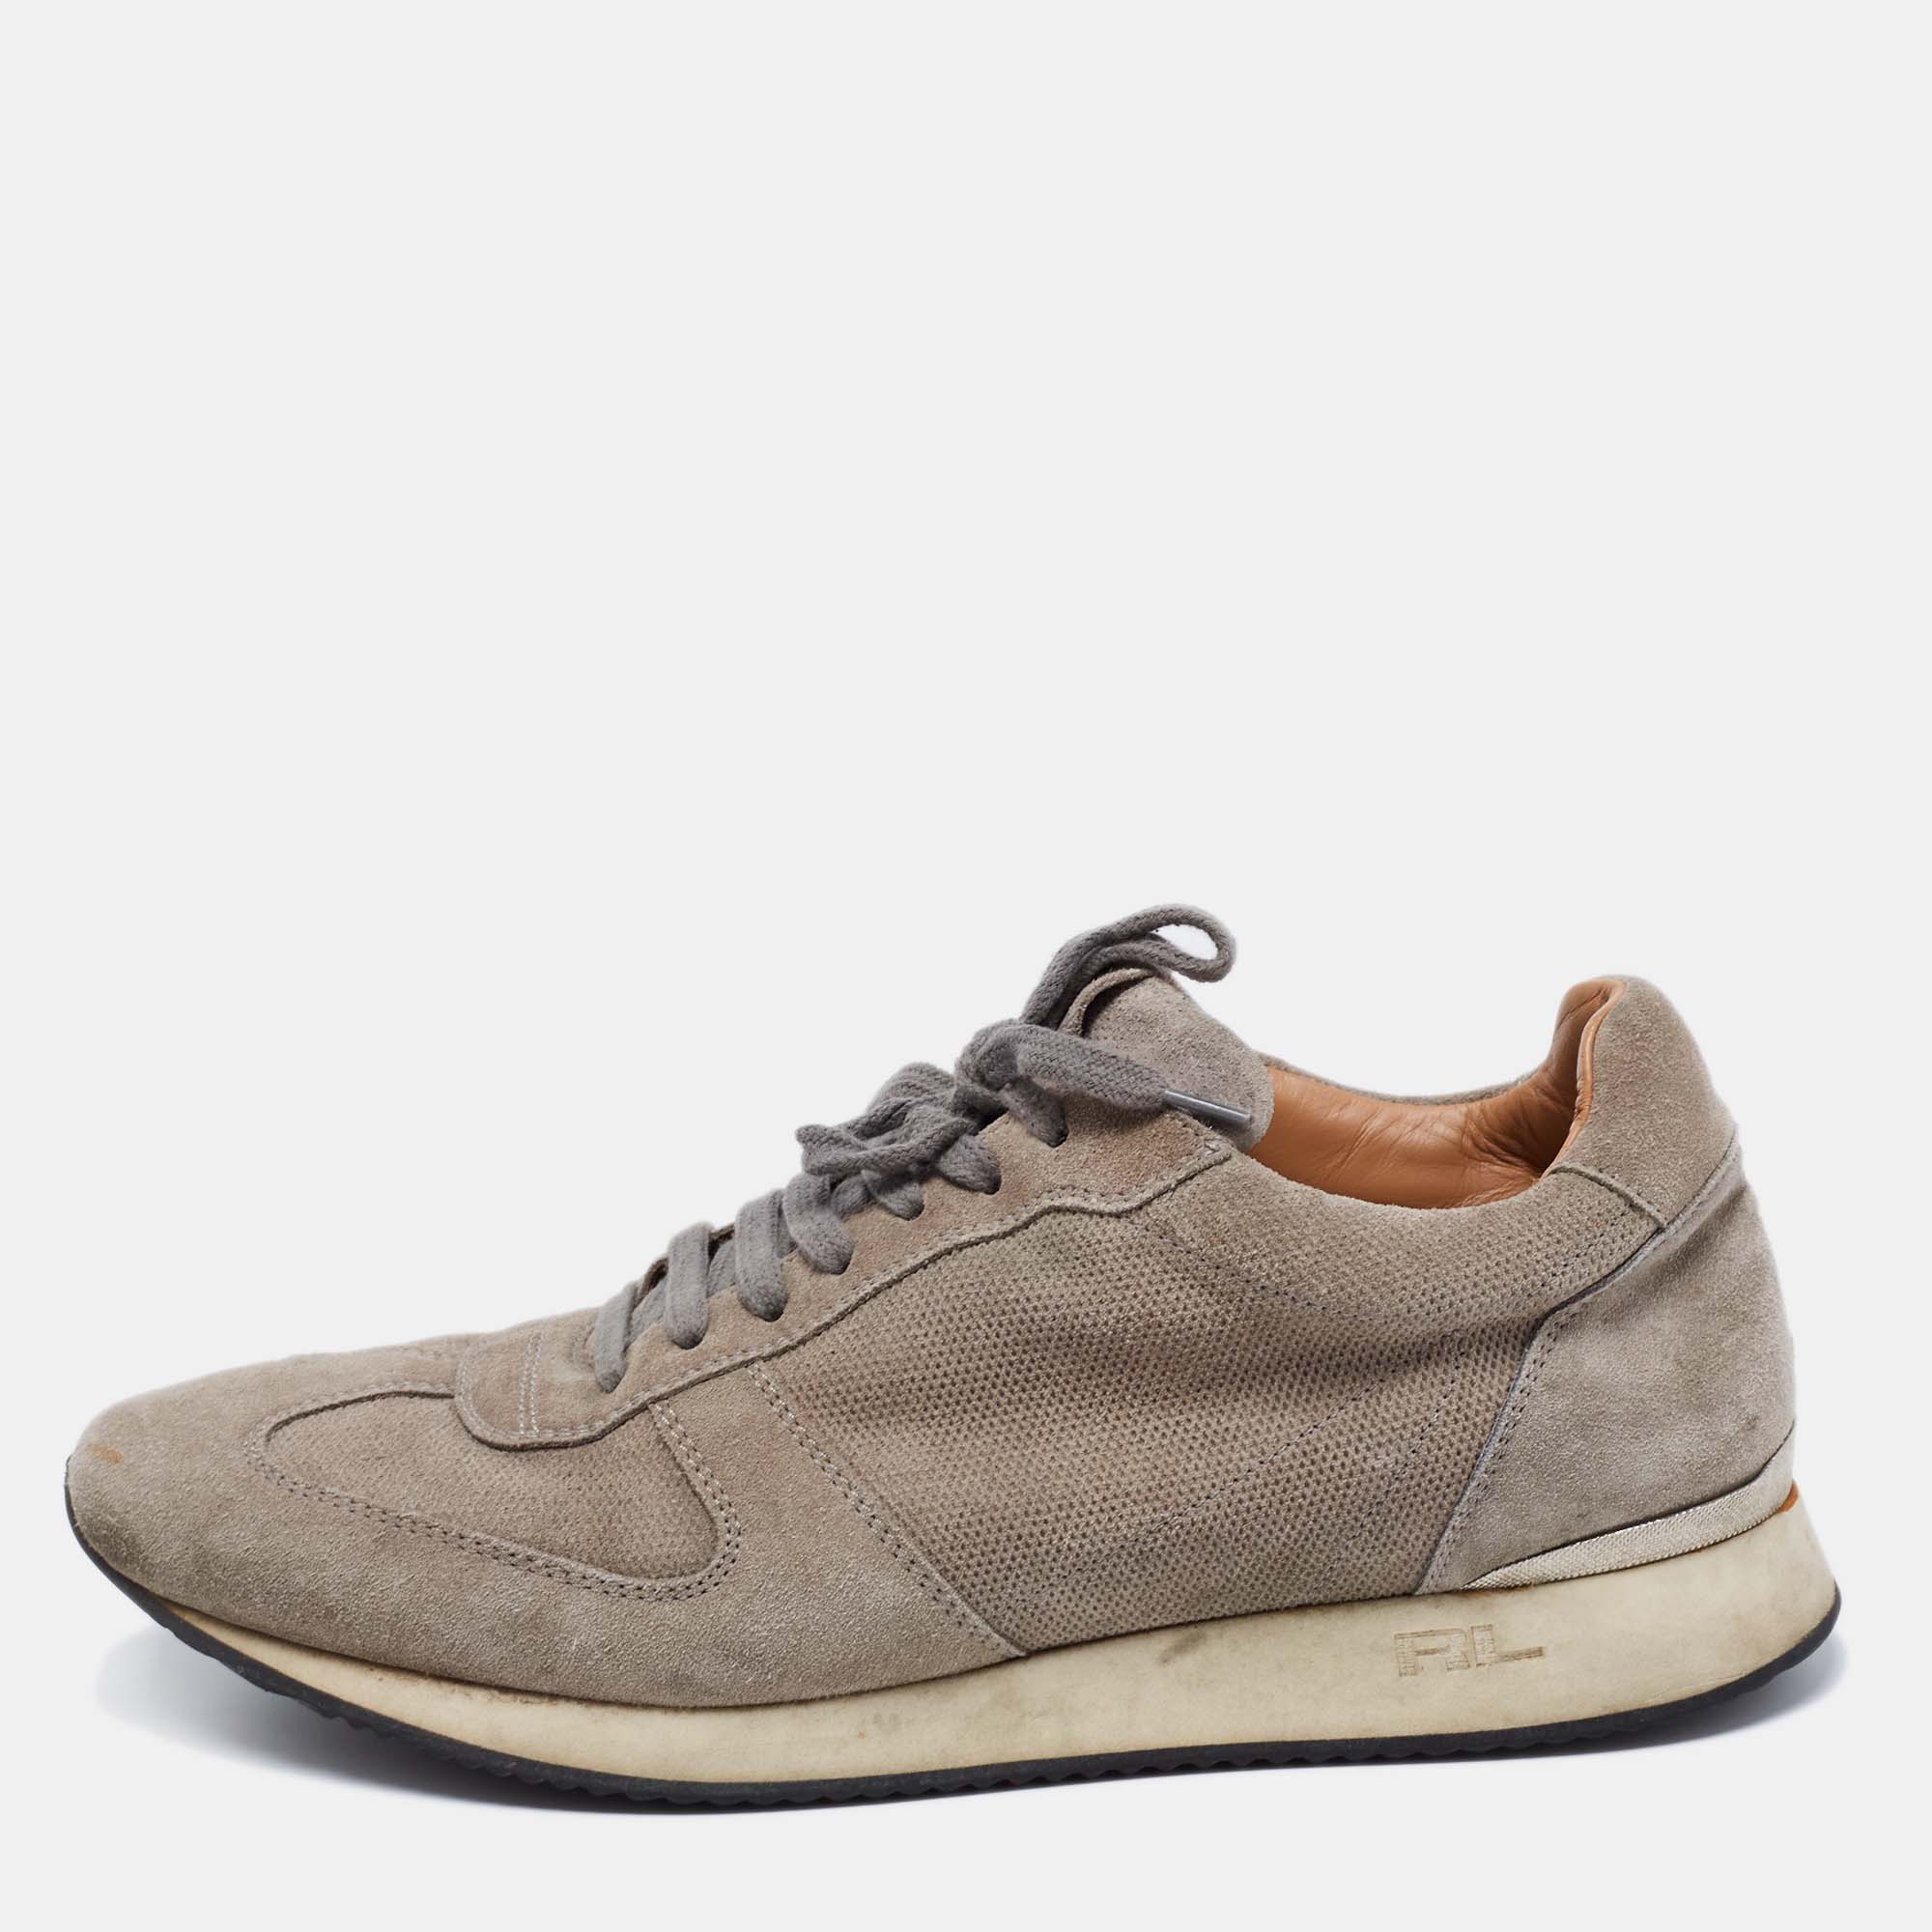 Ralph lauren grey suede and mesh low-top sneakers size 42